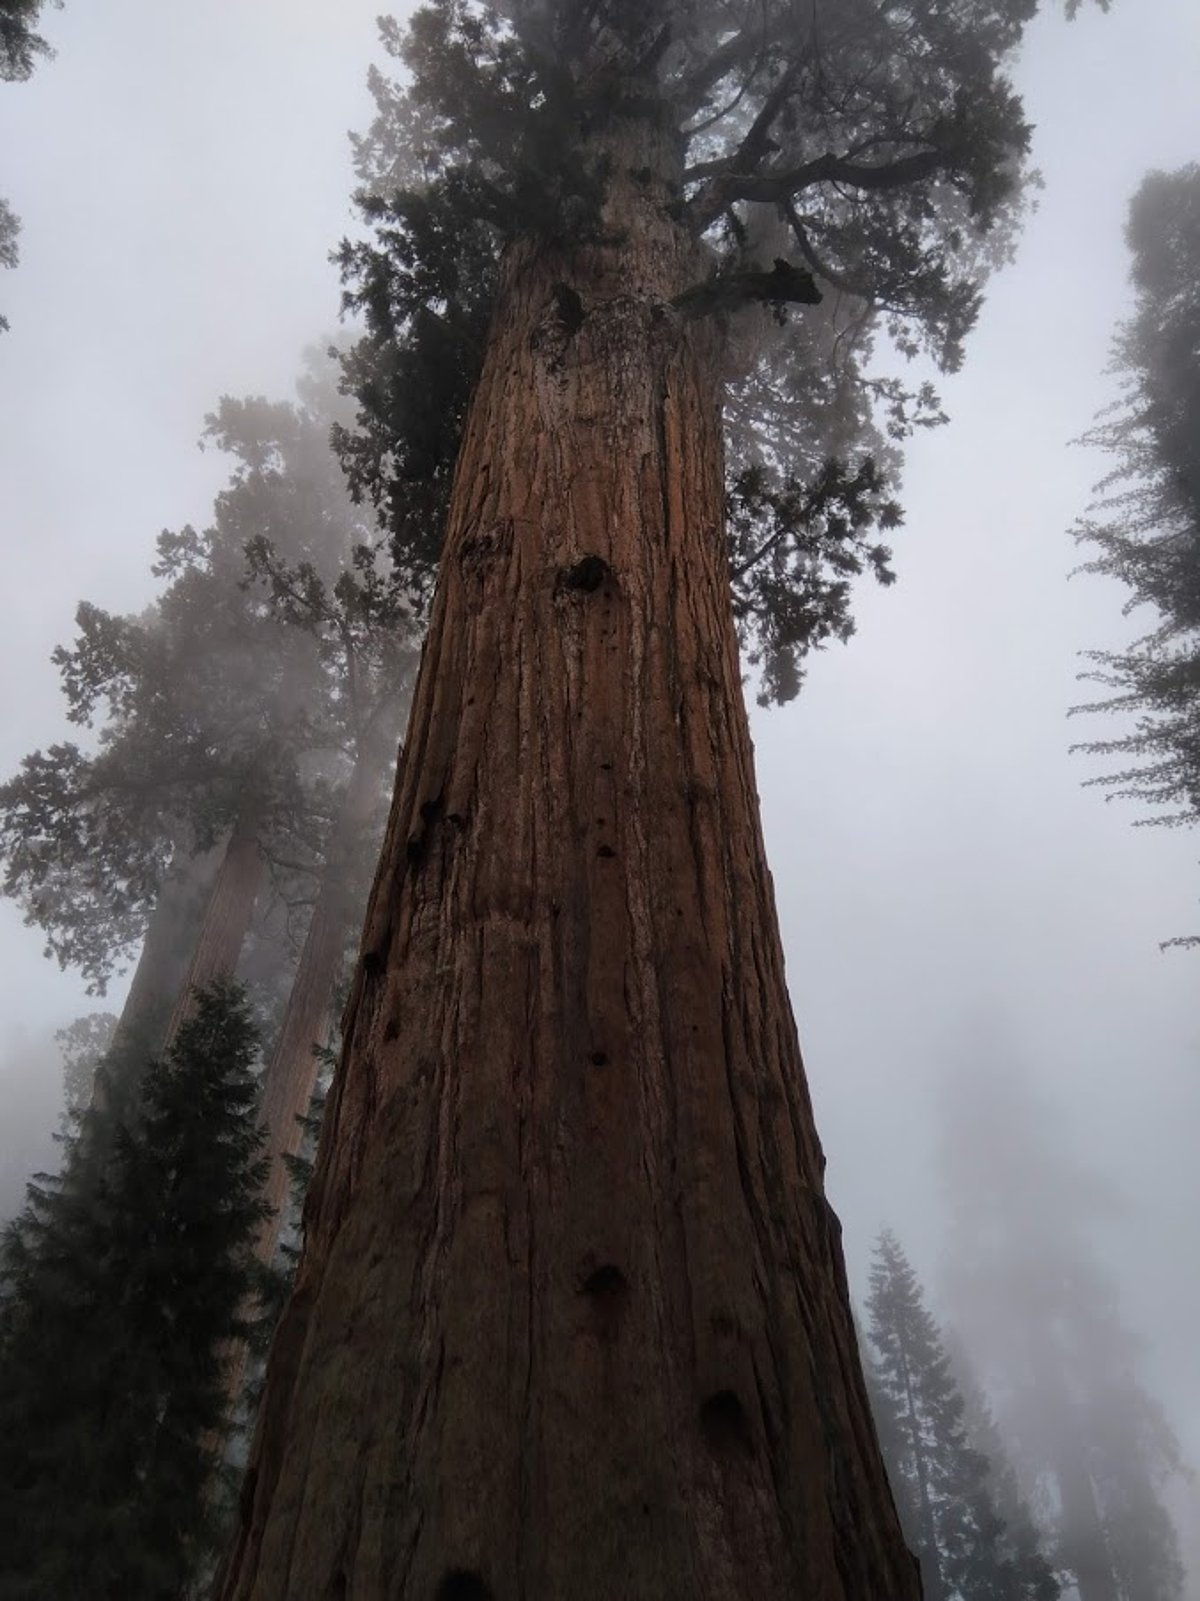 Pasaulē lielākais koks – milzu mamutkoka īpatnis Ģenerālis Šermans (Foto: Maris Eglīte)